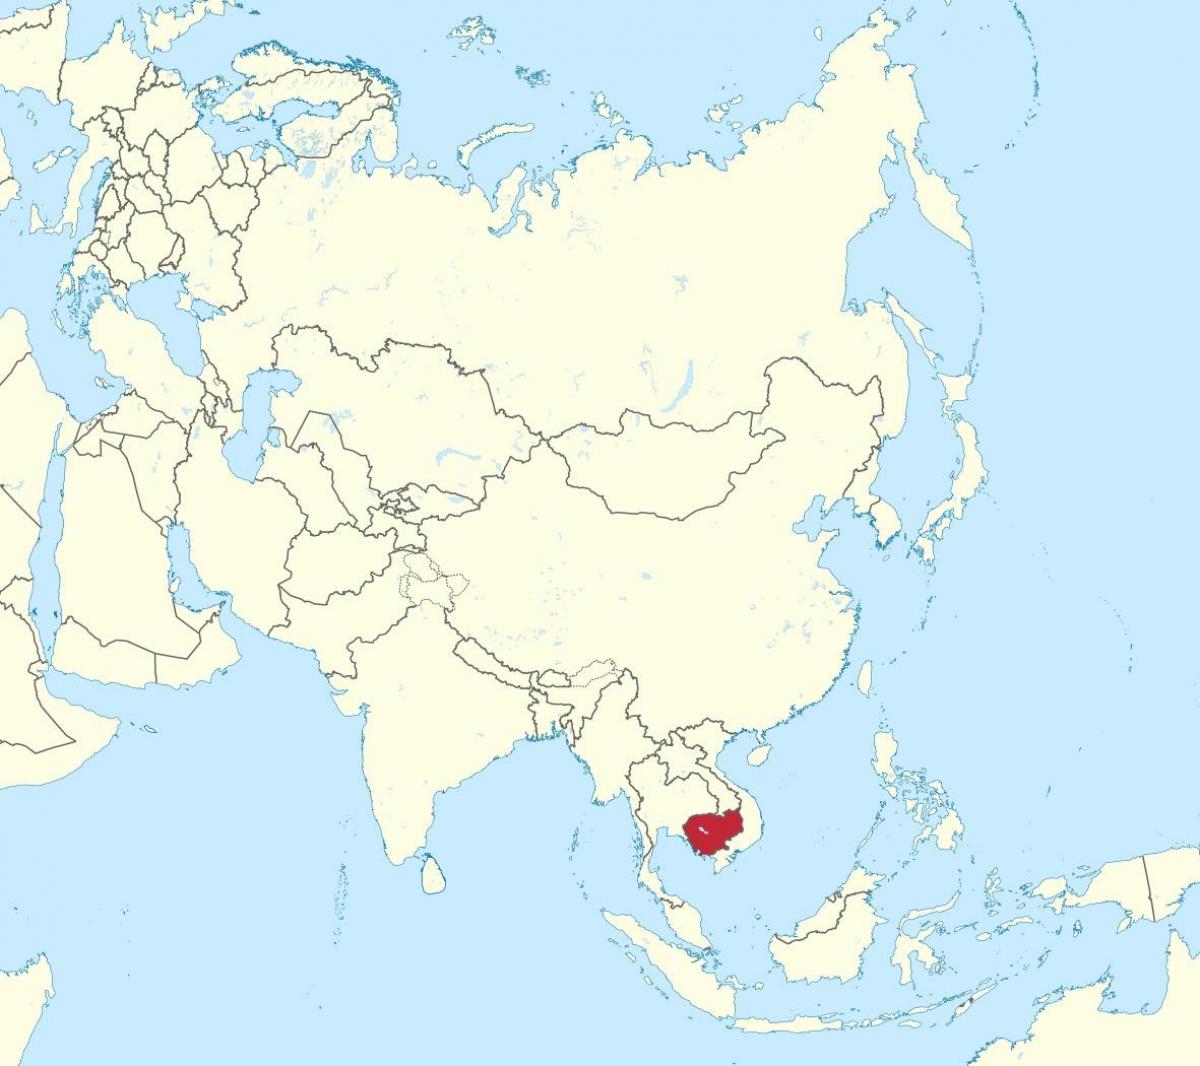 מפה של קמבודיה באסיה